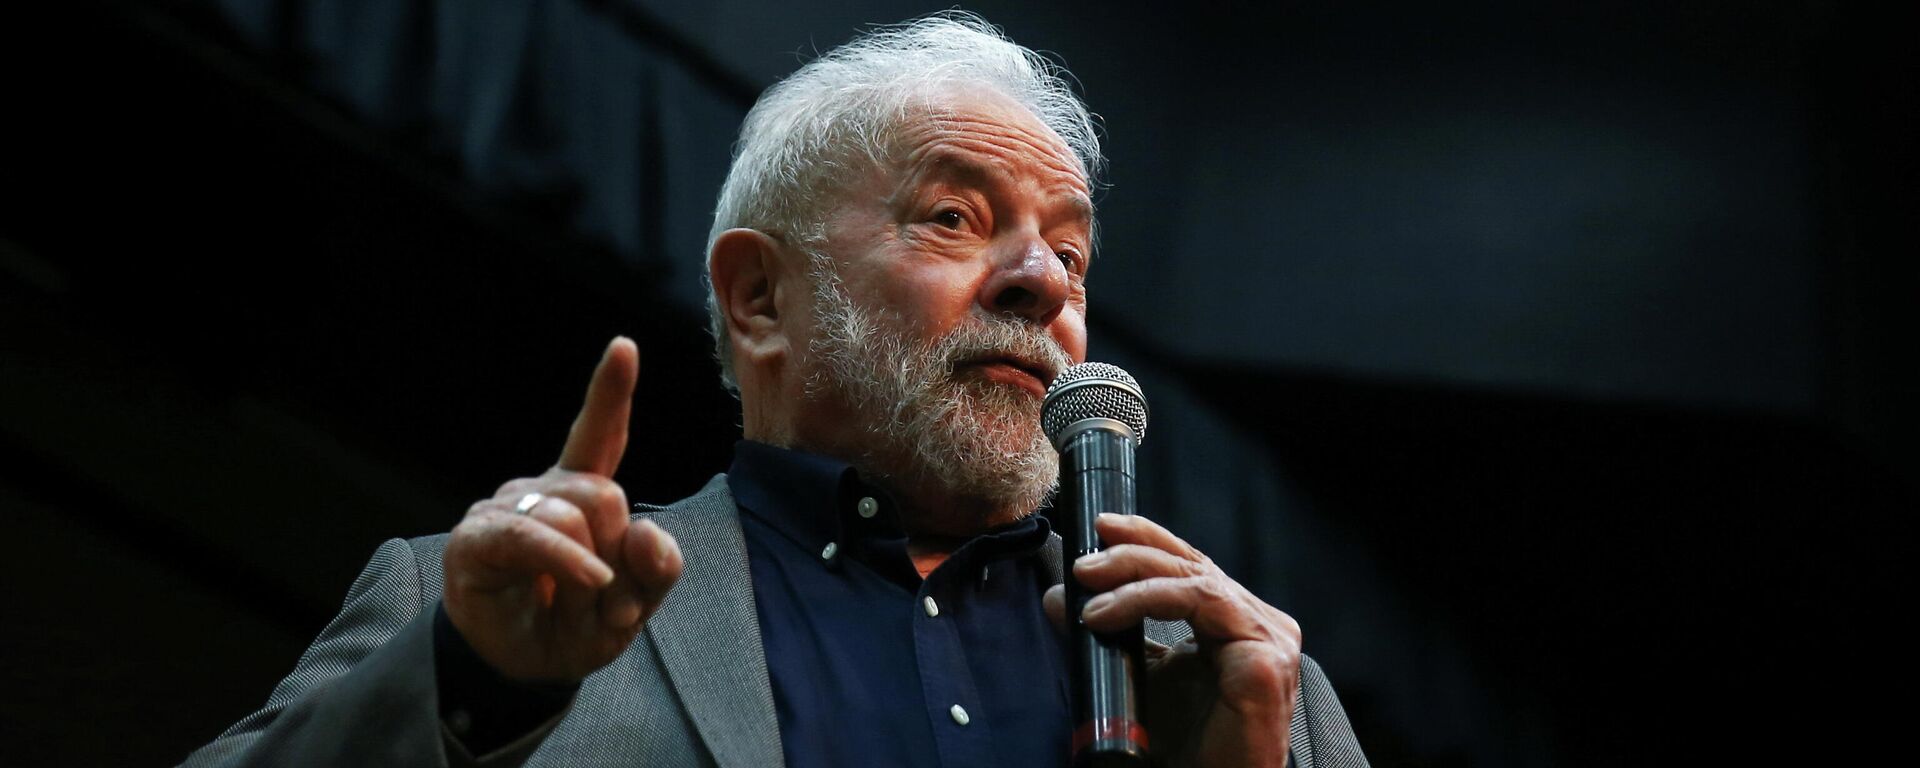 Luiz Inácio Lula da Silva, expresidente brasileño  - Sputnik Mundo, 1920, 08.12.2021